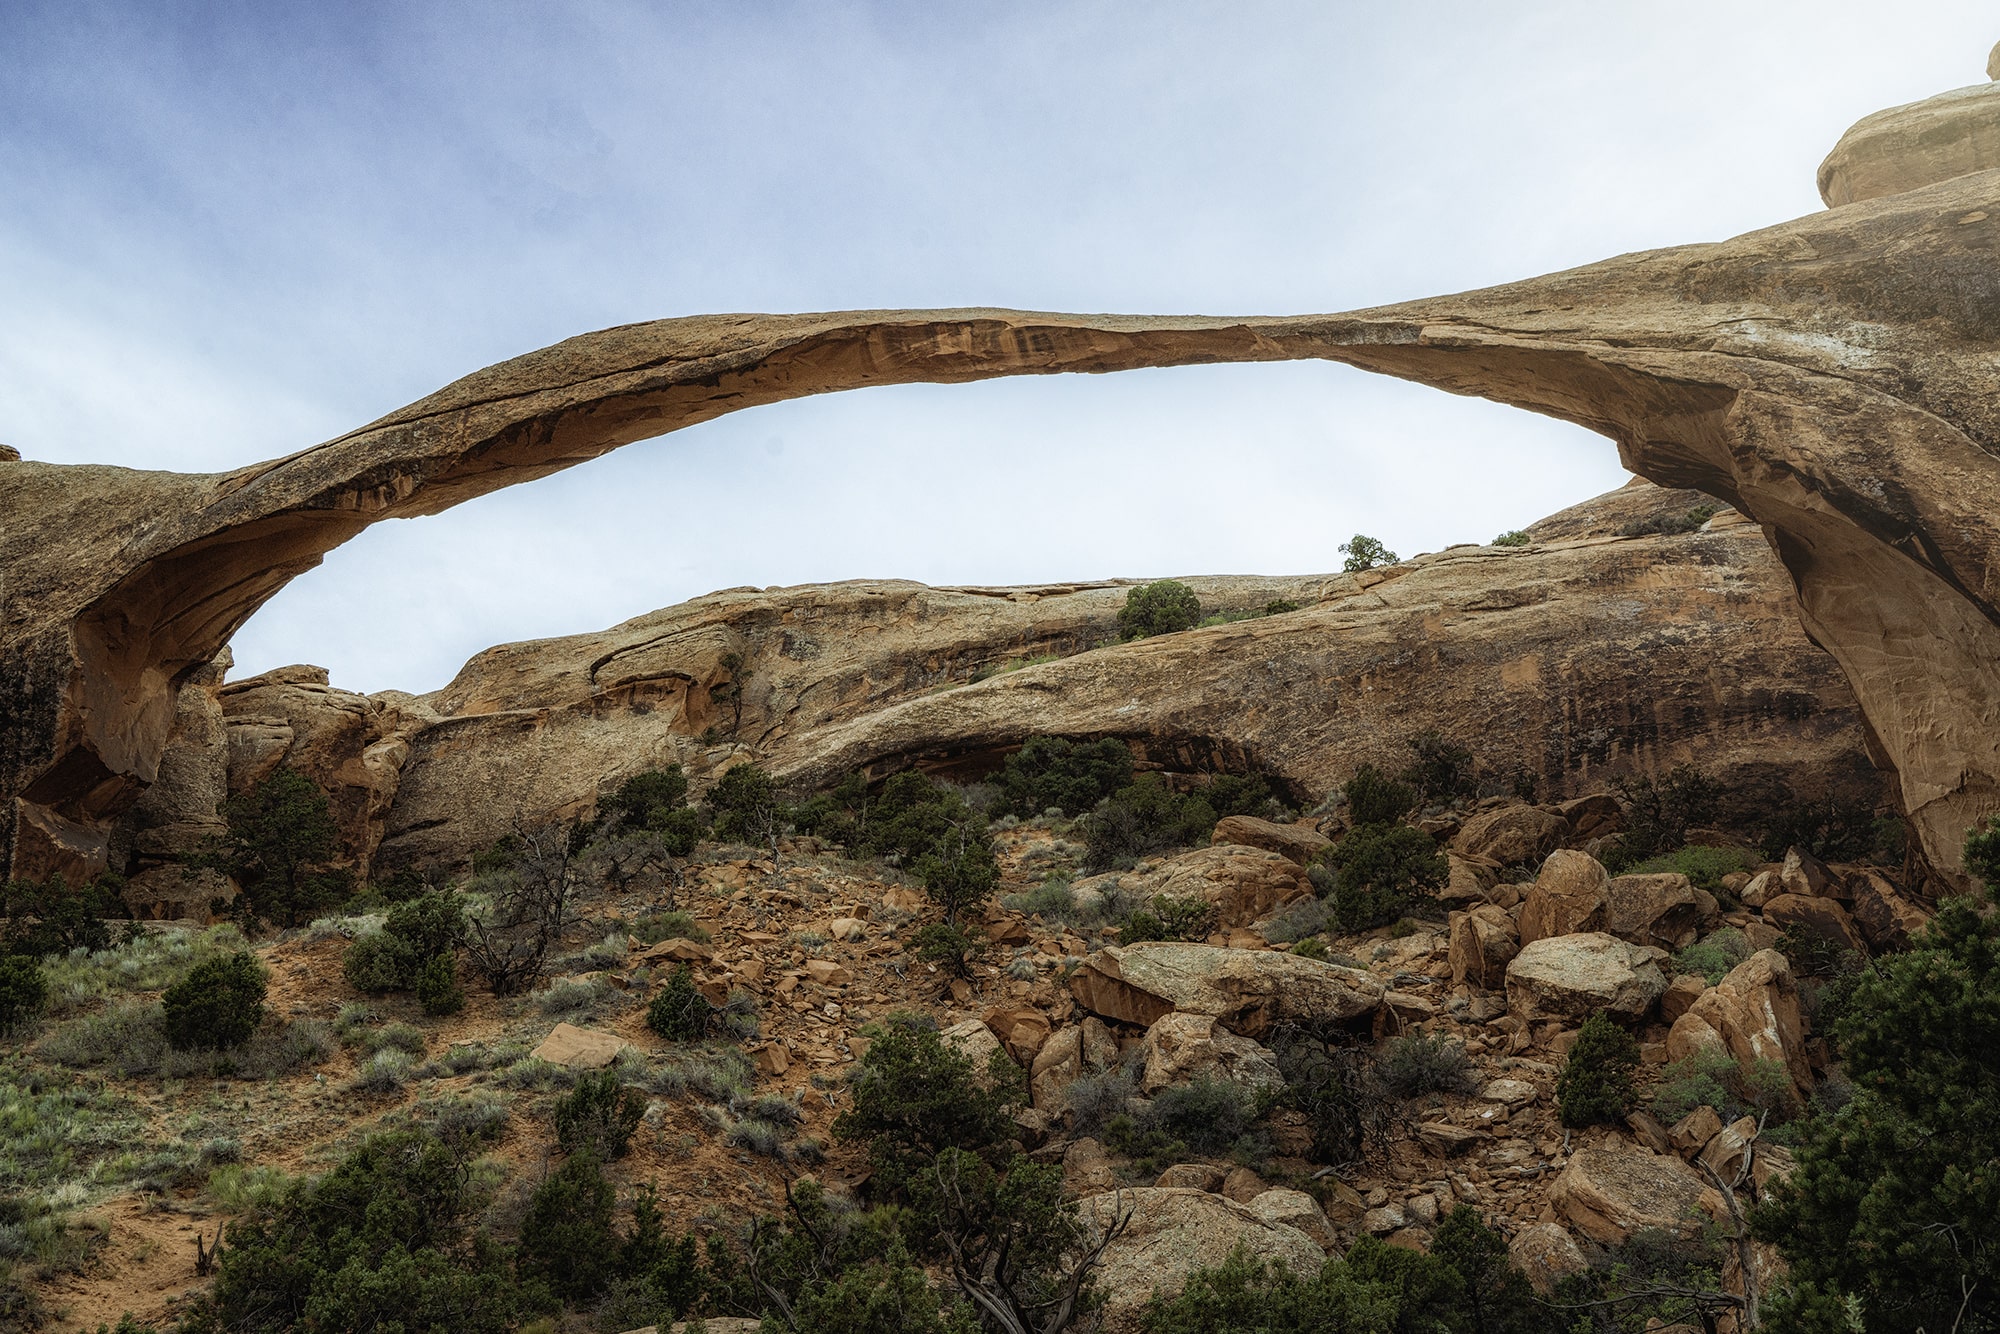 Full rock arch in the desert